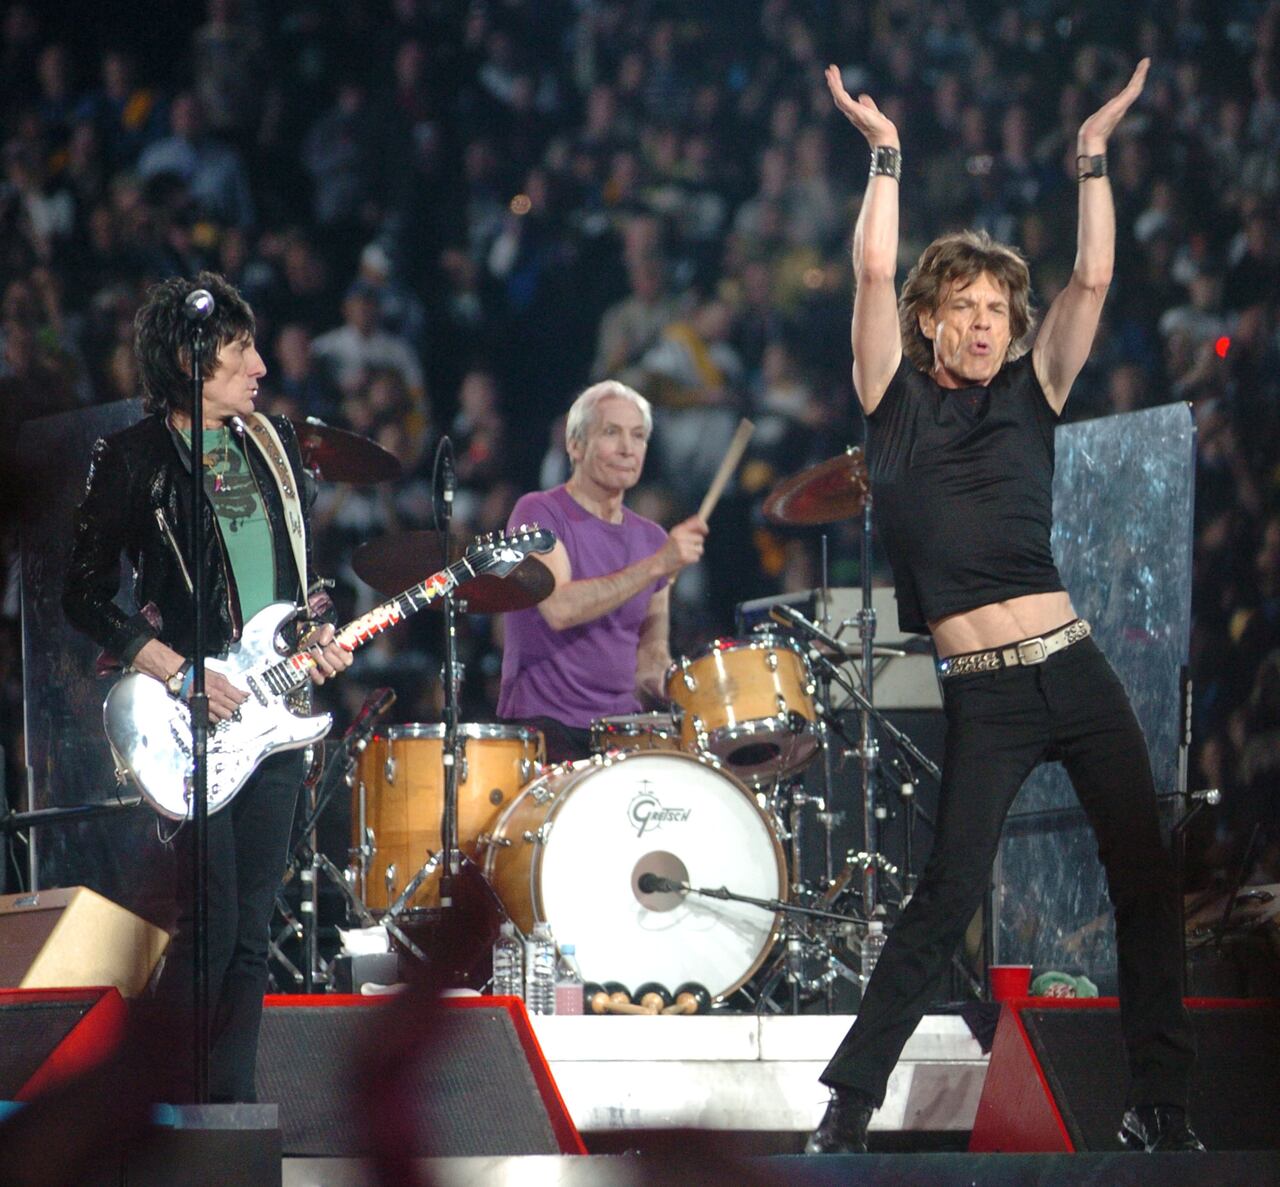 Como de costumbre, Ron Wood, Charlie Watts y Mick Jagger arrebataron a sus fans con su rock.